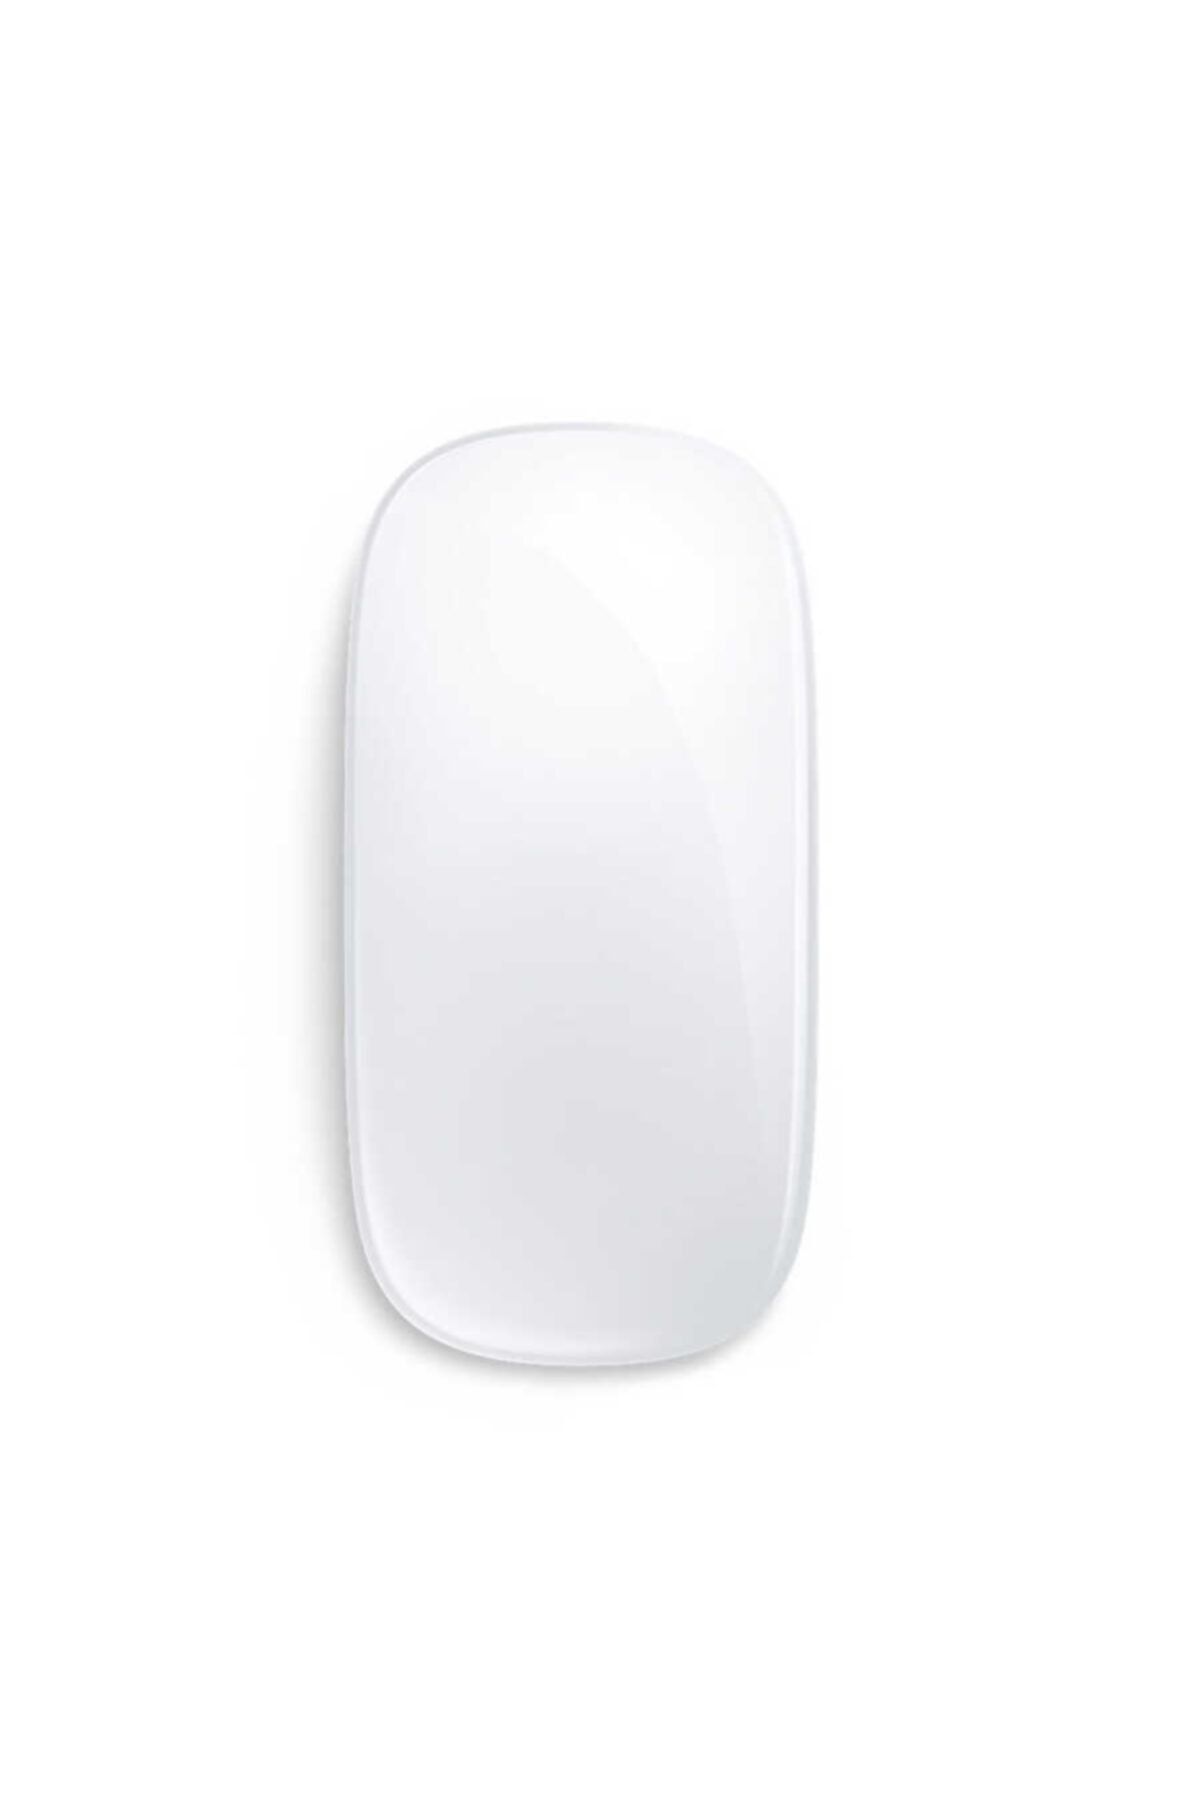 Cep prime Wireless 2.4 Mouse Fare Macbook Pro (retina, 15 Inç, 2014) Uyumlu Lisanslı Kablousuz Bağlantı